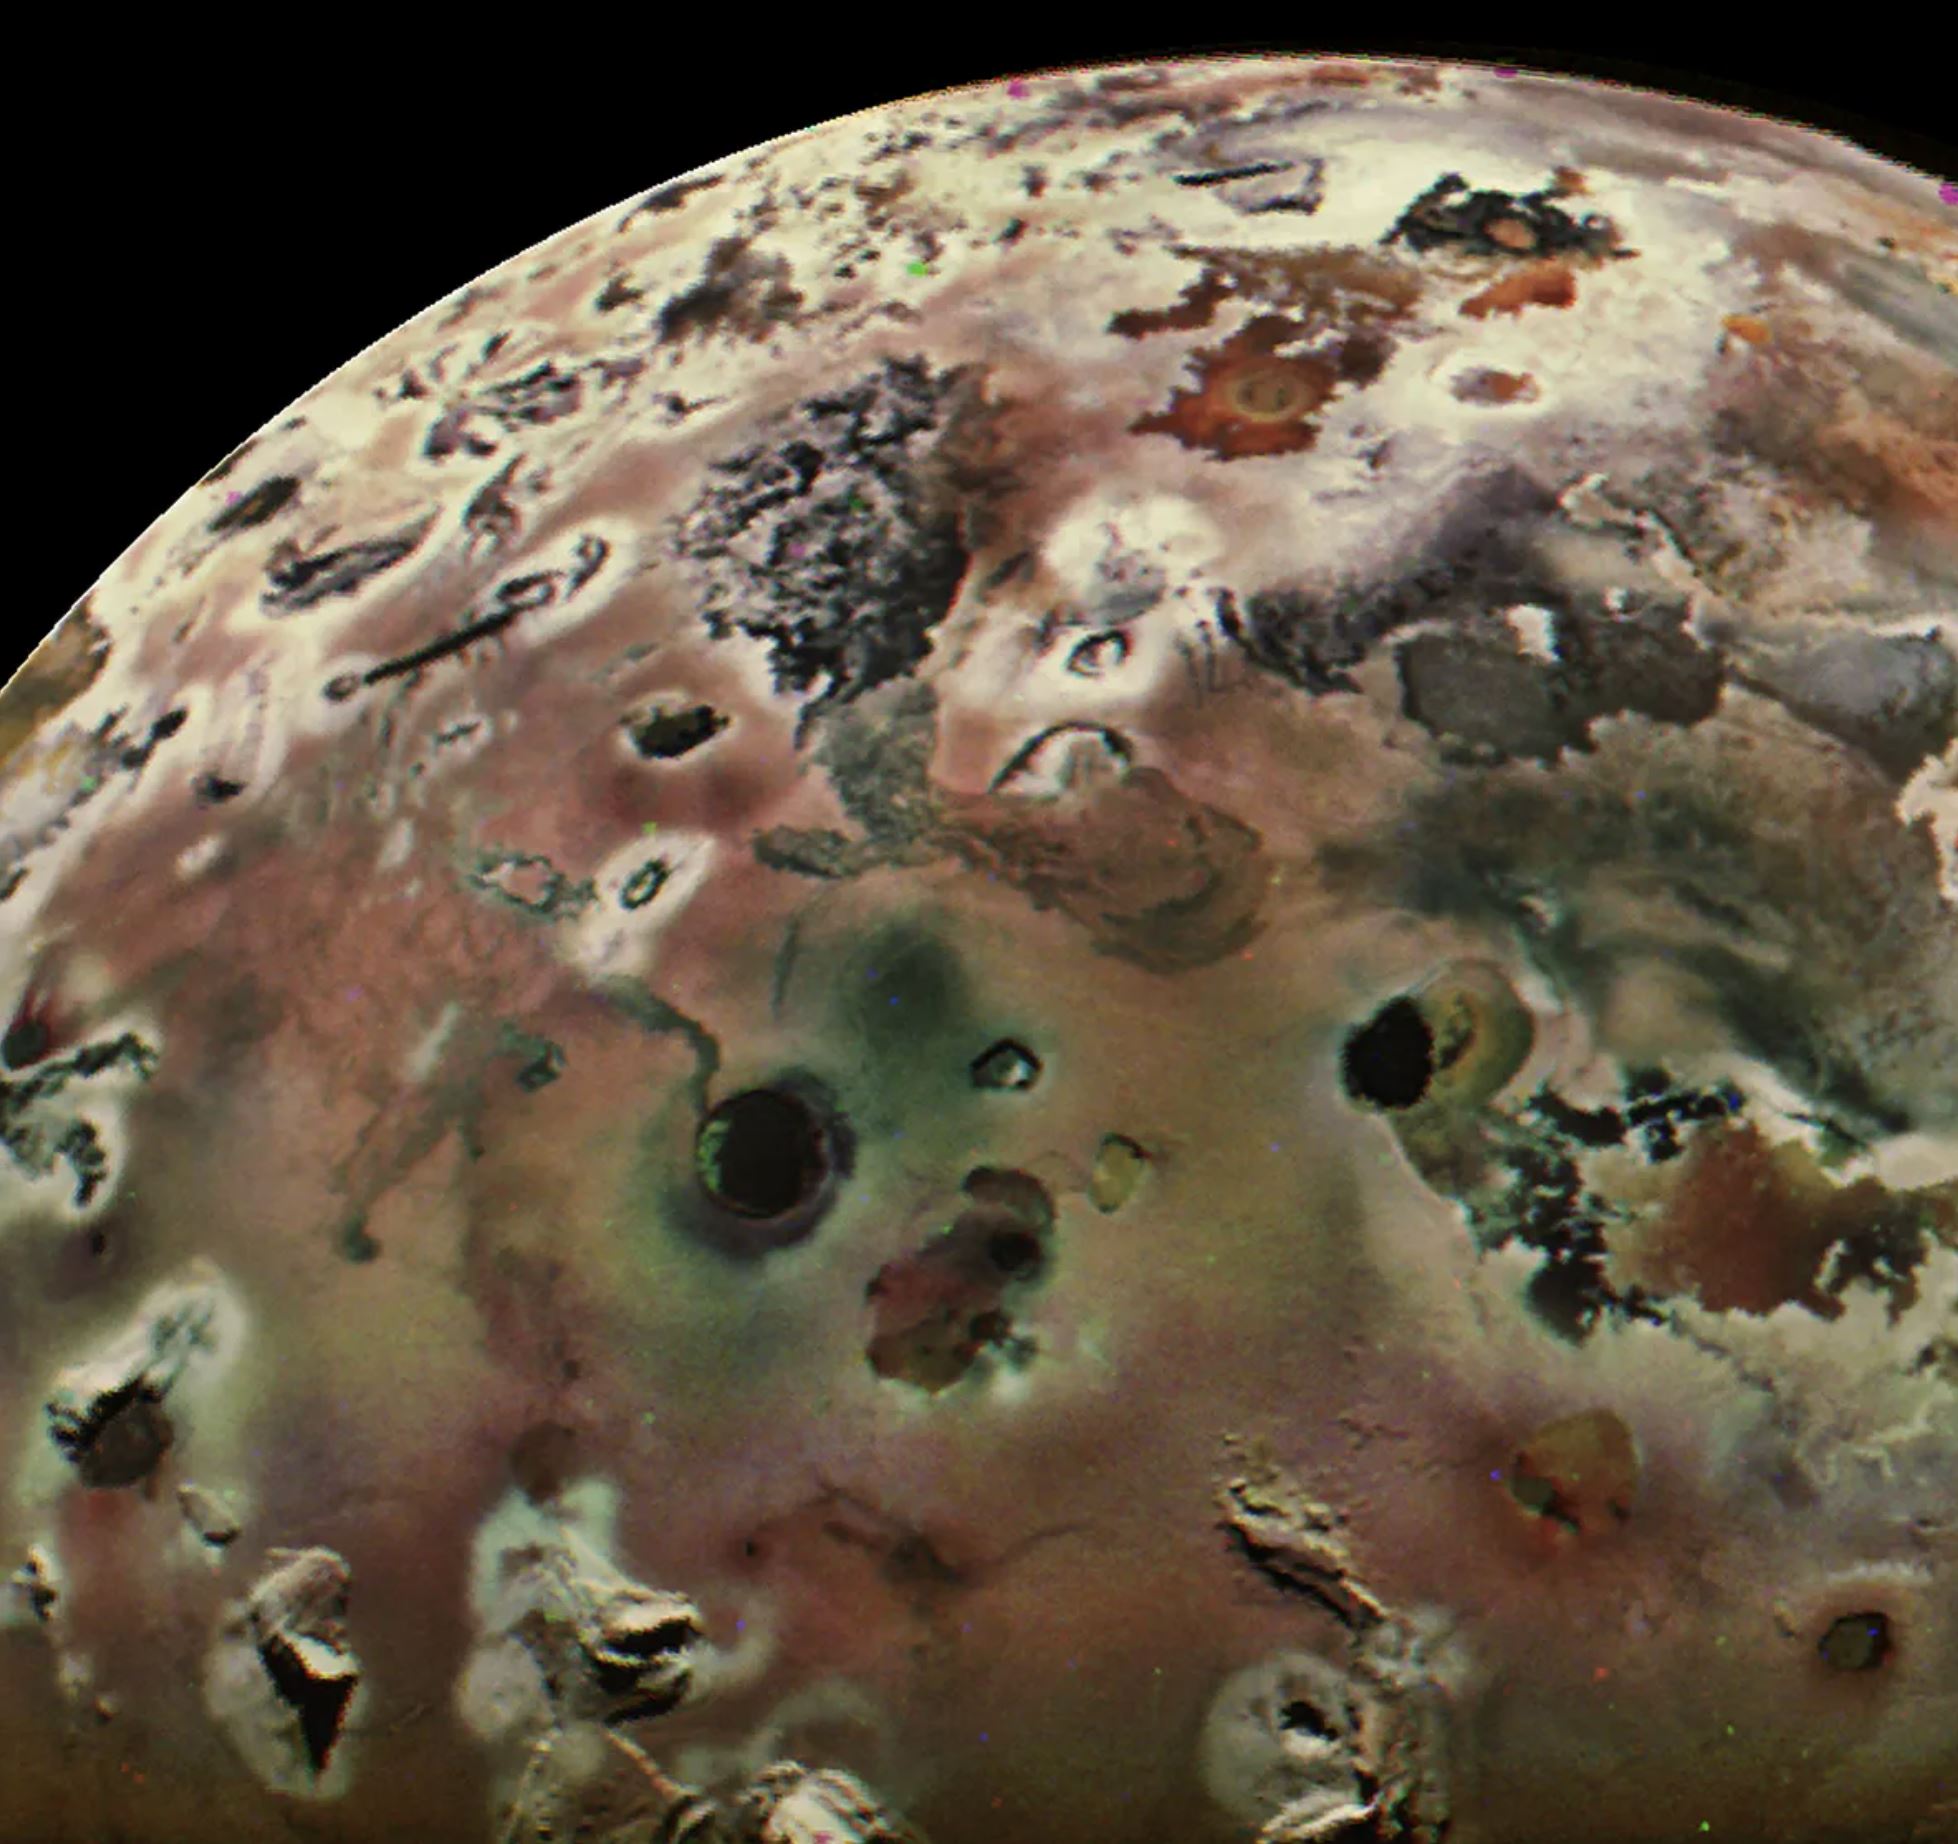 Fotografija Jupiterovog mjesec Ije izbliza. Zasluge: Image Credit: NASA/JPL-Caltech/SwRI/MSSS/Thomas Thomopoulos.